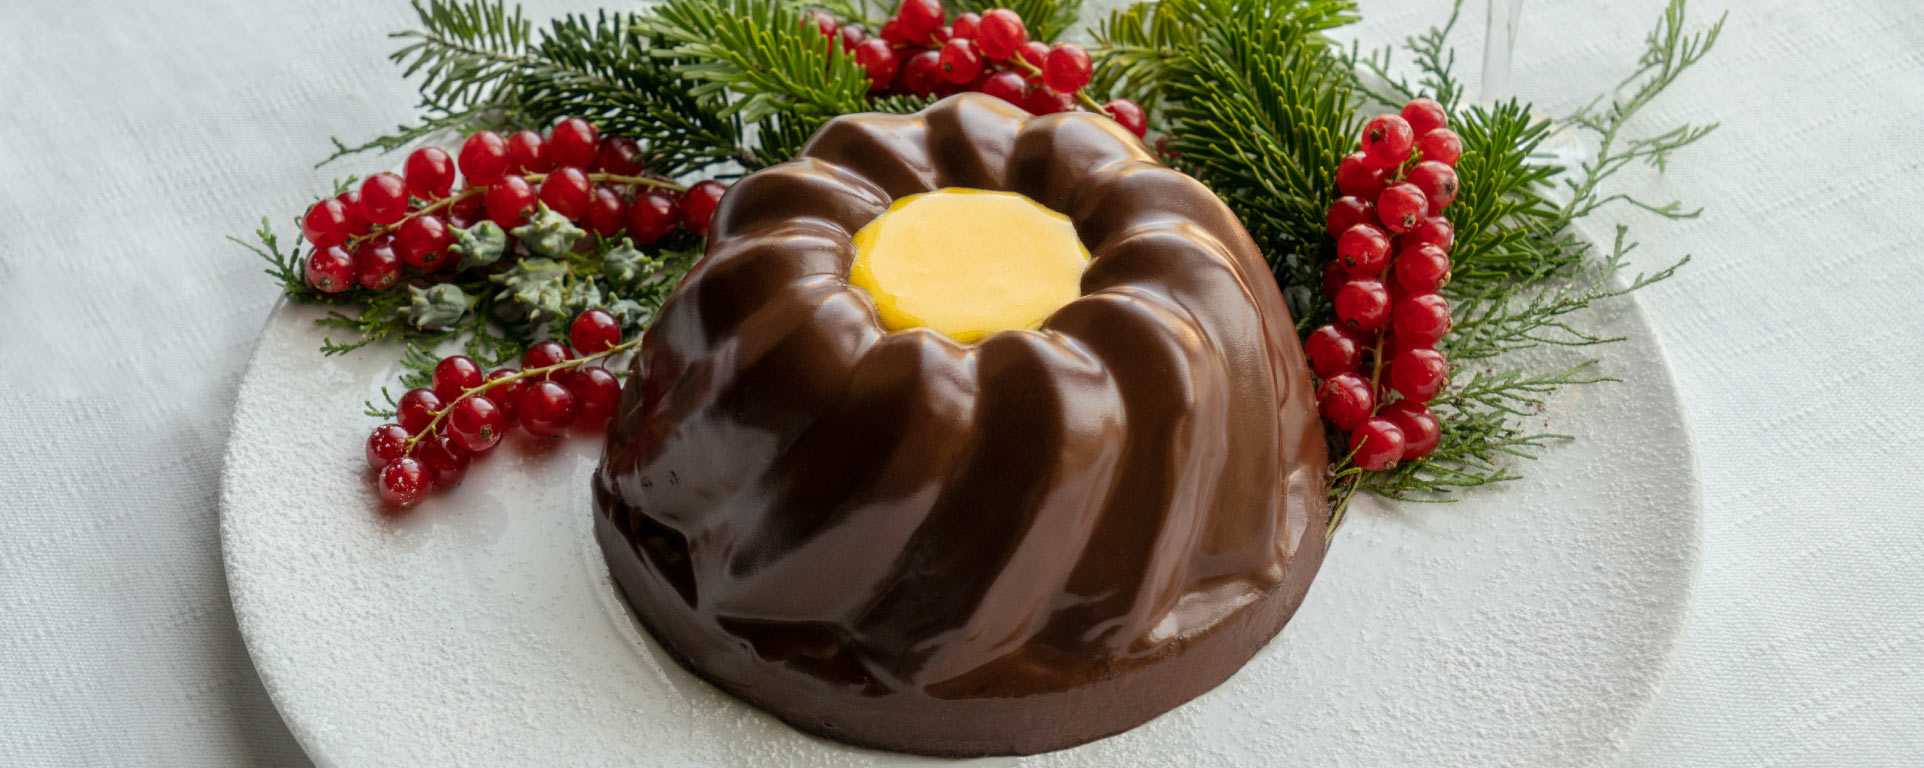 Chocolate Pudding - Bertazzoni